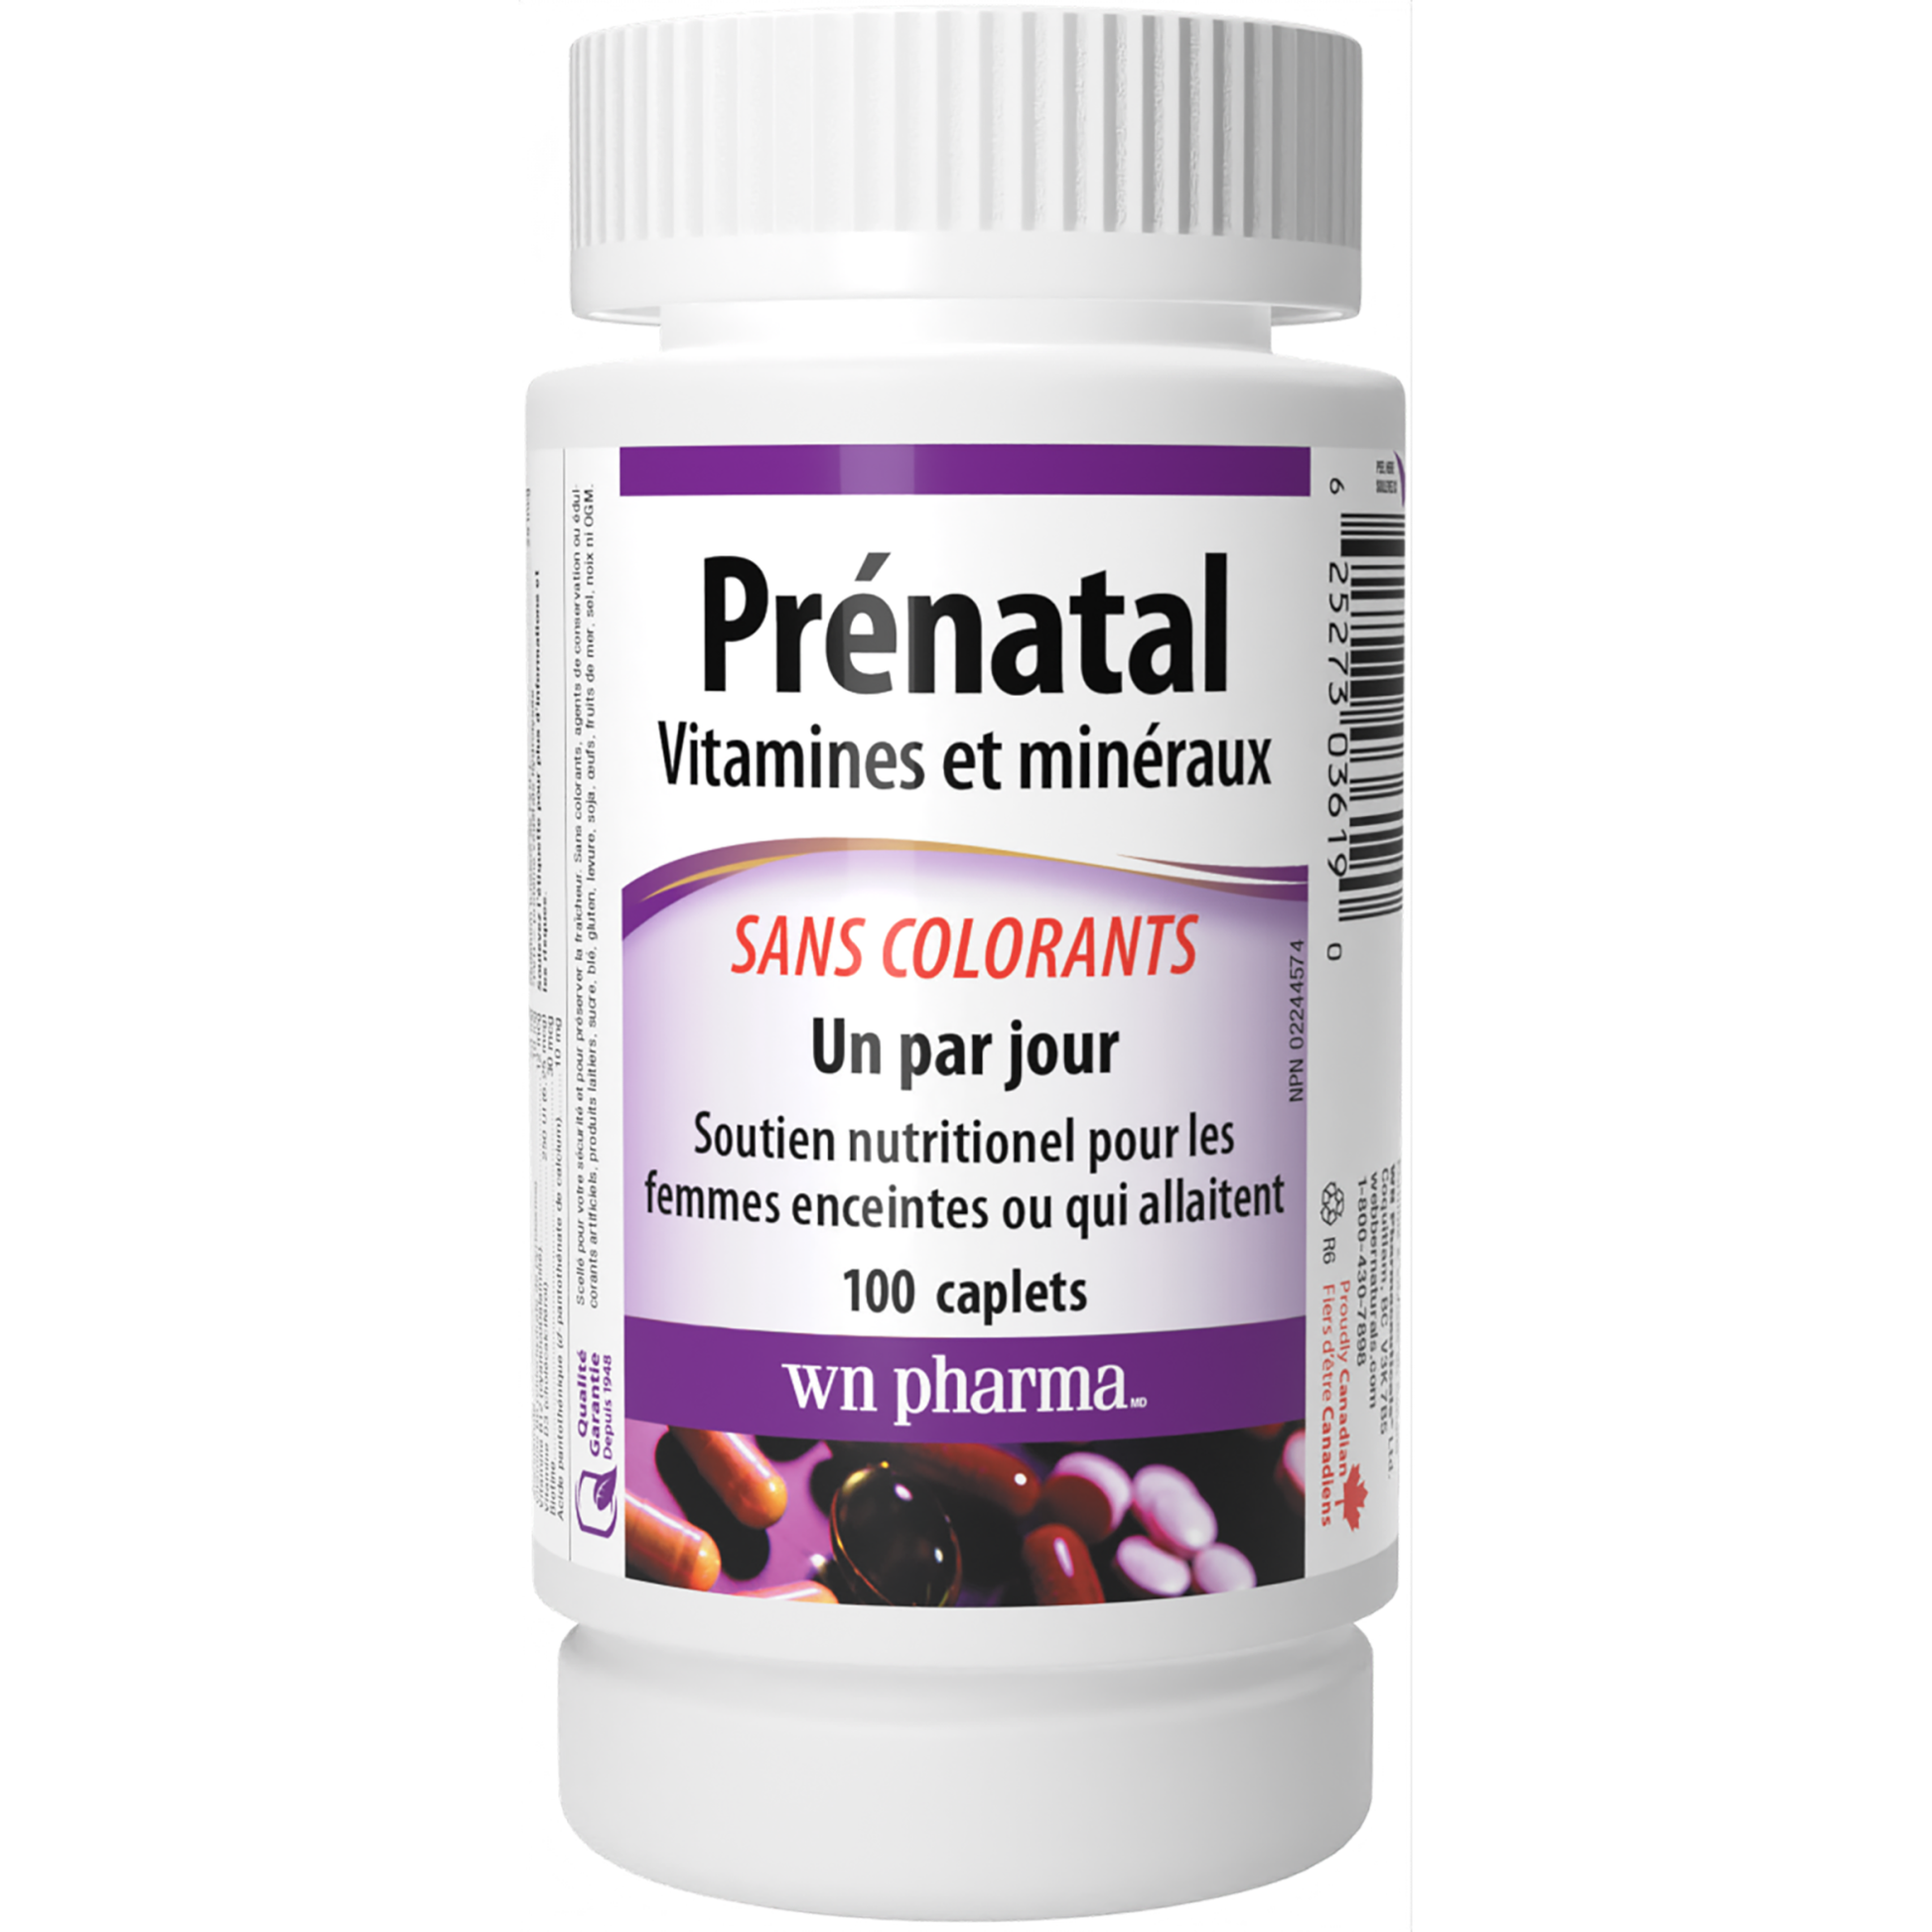 Prénatal Vitamines et minéraux Un par jour for WN Pharma®|v|hi-res|WN3619